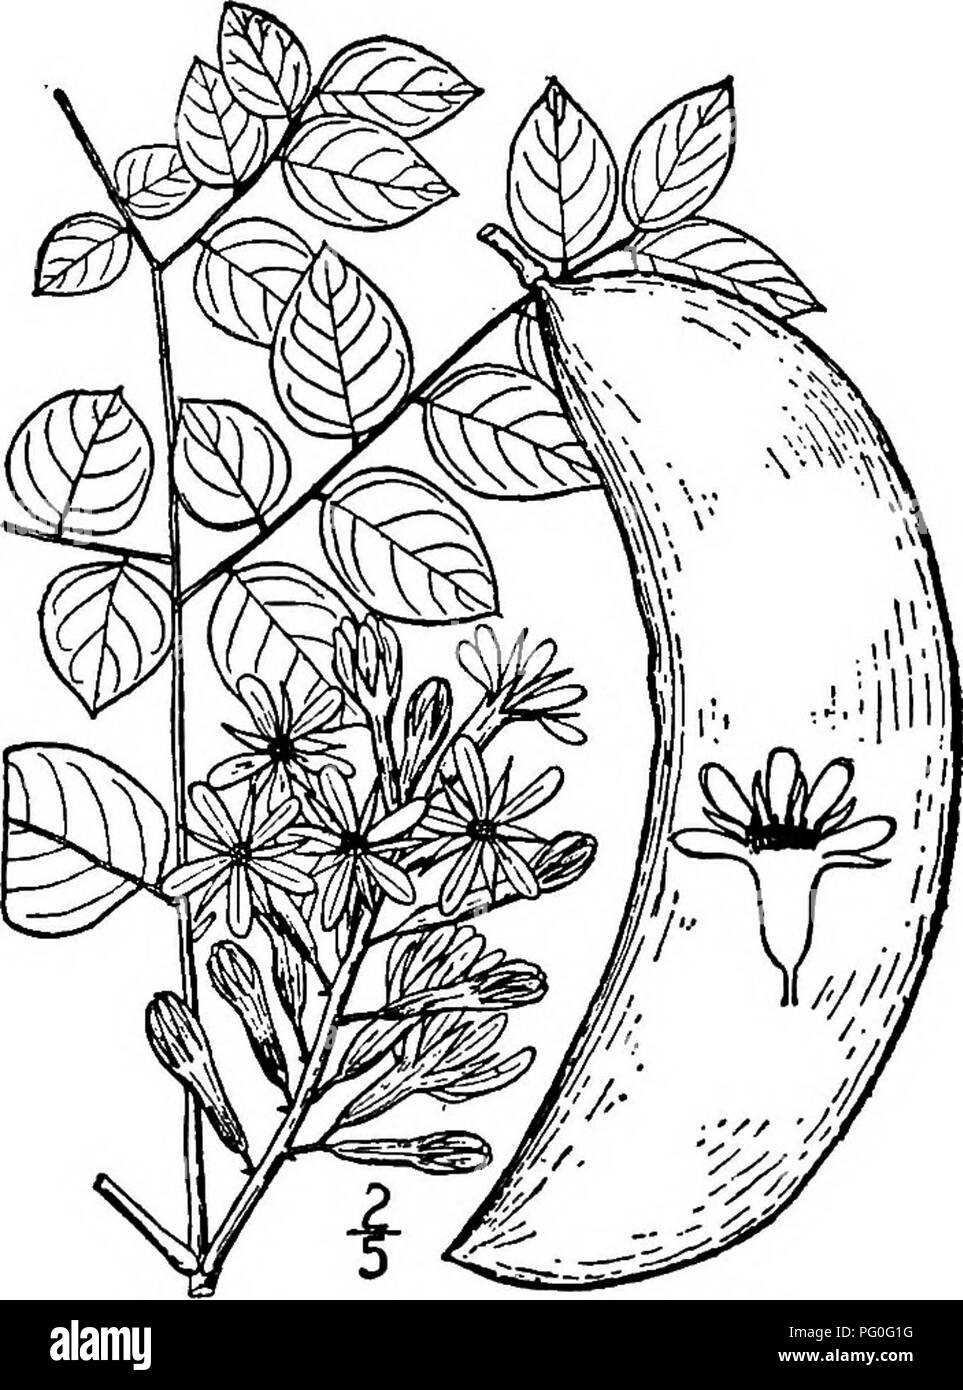 . North American Bäume: Beschreibungen und Abbildungen der Bäume unabhängig von Anbau in Nordamerika wächst, nördlich von Mexiko und der Karibik. Bäume. Kentucky Kaffee Baum 541 IV. KENTUCKY KAFFEE BAUM DER GATTUNG GYMNOCLADUS LAMARCK Arten Gymnocladtis dioica (Linnaeus) Koch GuUandina dioica Linnseus. Gymnocladus canadensis Lamarck ilHIS großen Baum, auch genannt/Mutter, Coffee Bean, nicker Baum, und Mahagoni, tritt aus dem südlichen Ontario und Minnesota Tennessee und der indischen Gegend südwärts, wachsen in satten, tiefen Boden. Oft ist es bei der Kultivierung in der northea gesehen Stockfoto